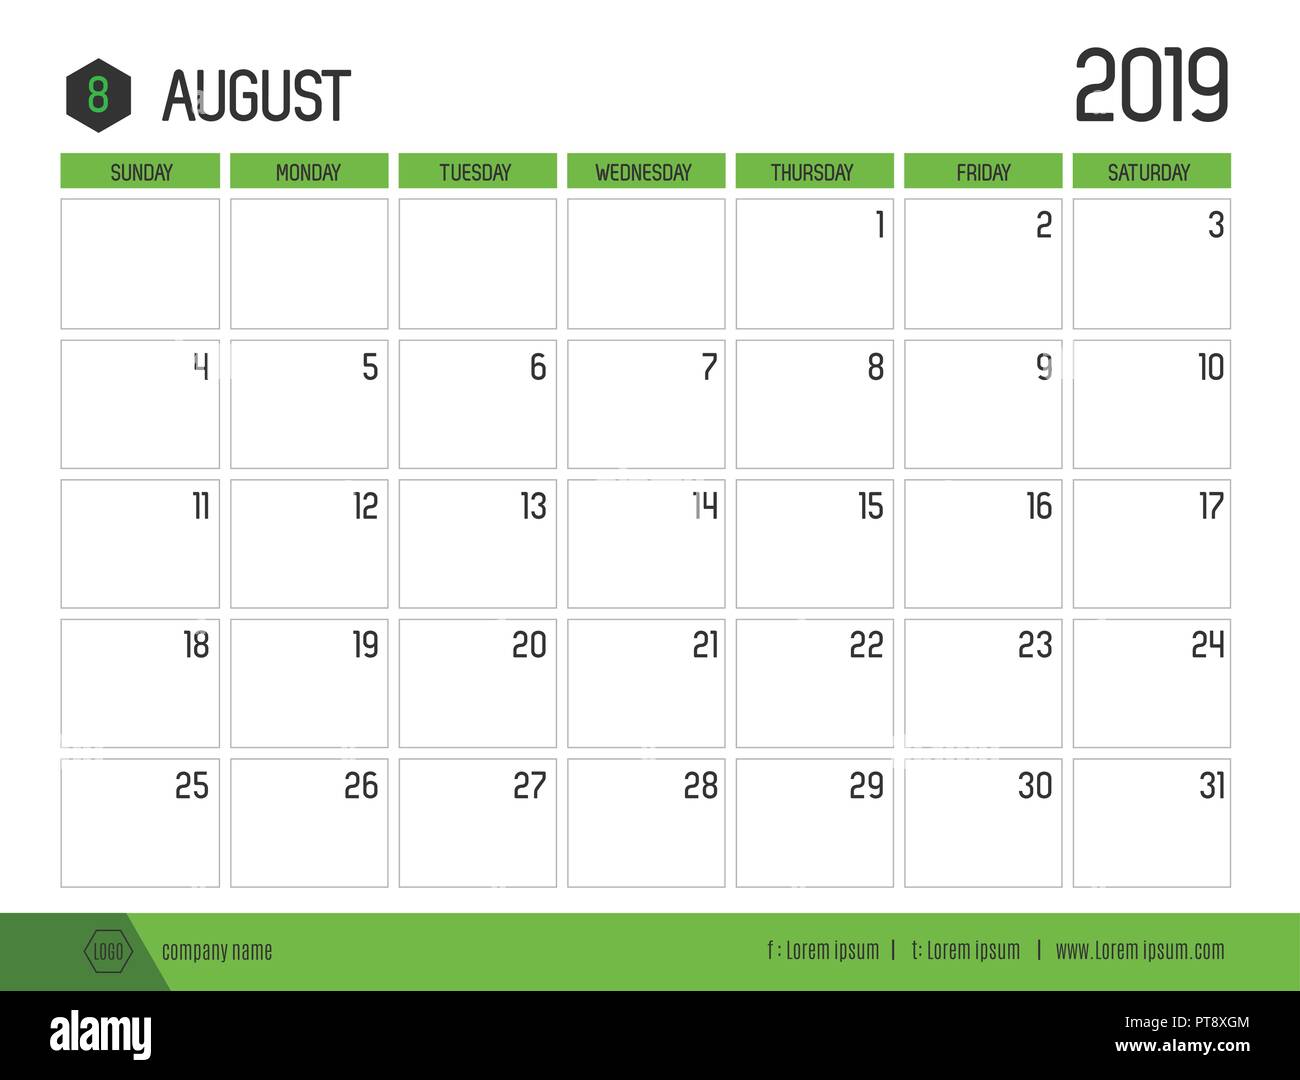 Vecteur de calendrier 2019 vert moderne ( août ) en simple table propre style.full size 21 x 16 cm ; début de la semaine le dimanche Illustration de Vecteur